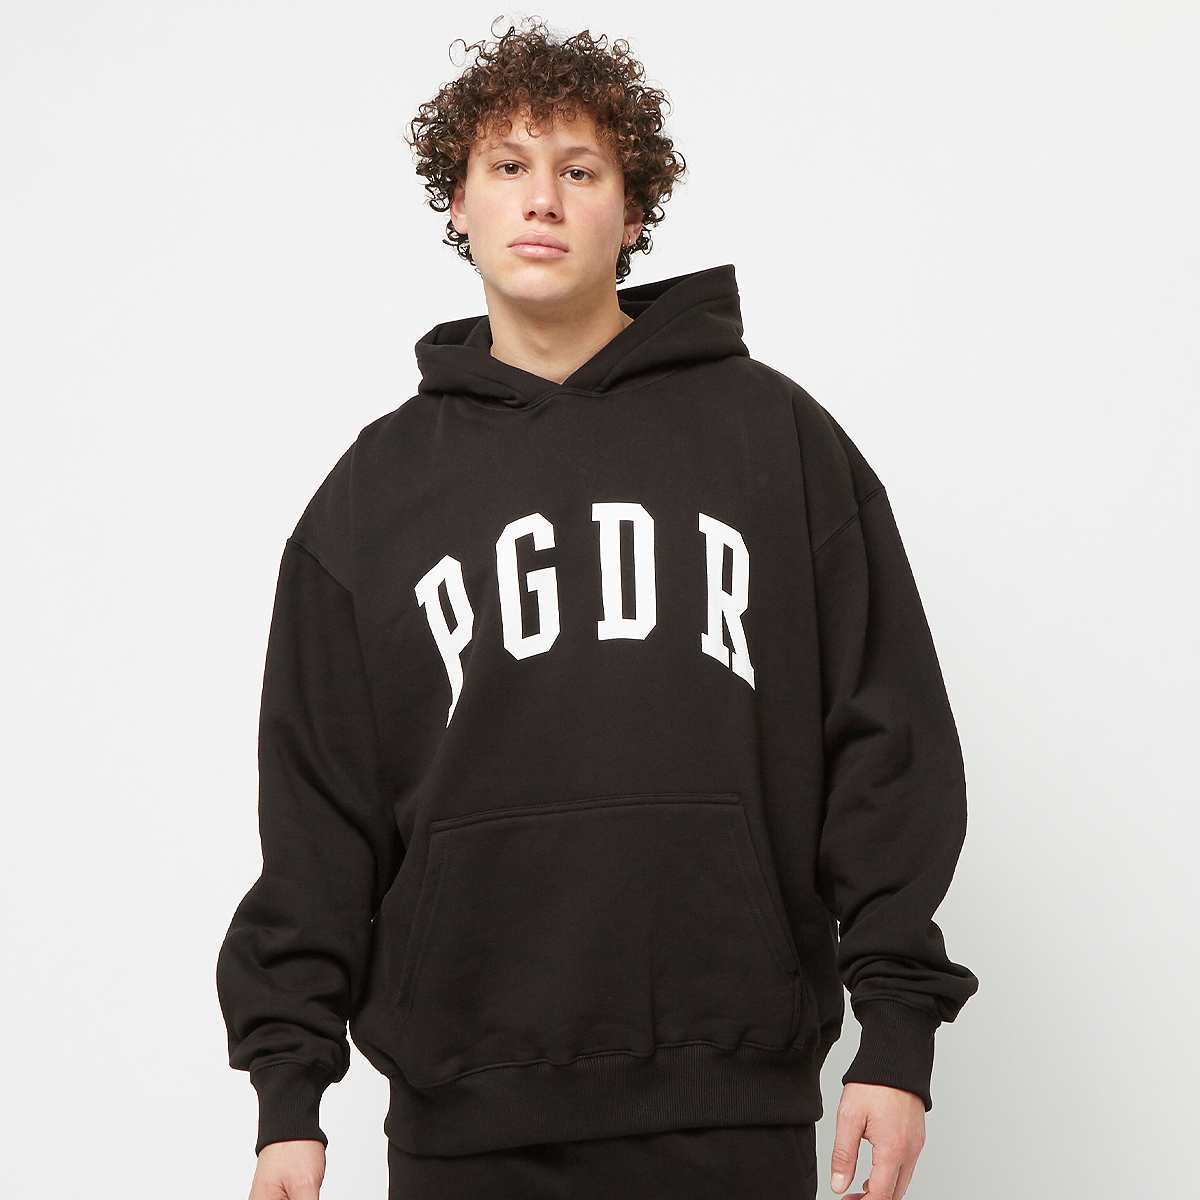 pegador layton oversized hoodie, sweats à capuche, homme, black, taille: xxl, tailles disponibles:s,m,l,xl,xxl